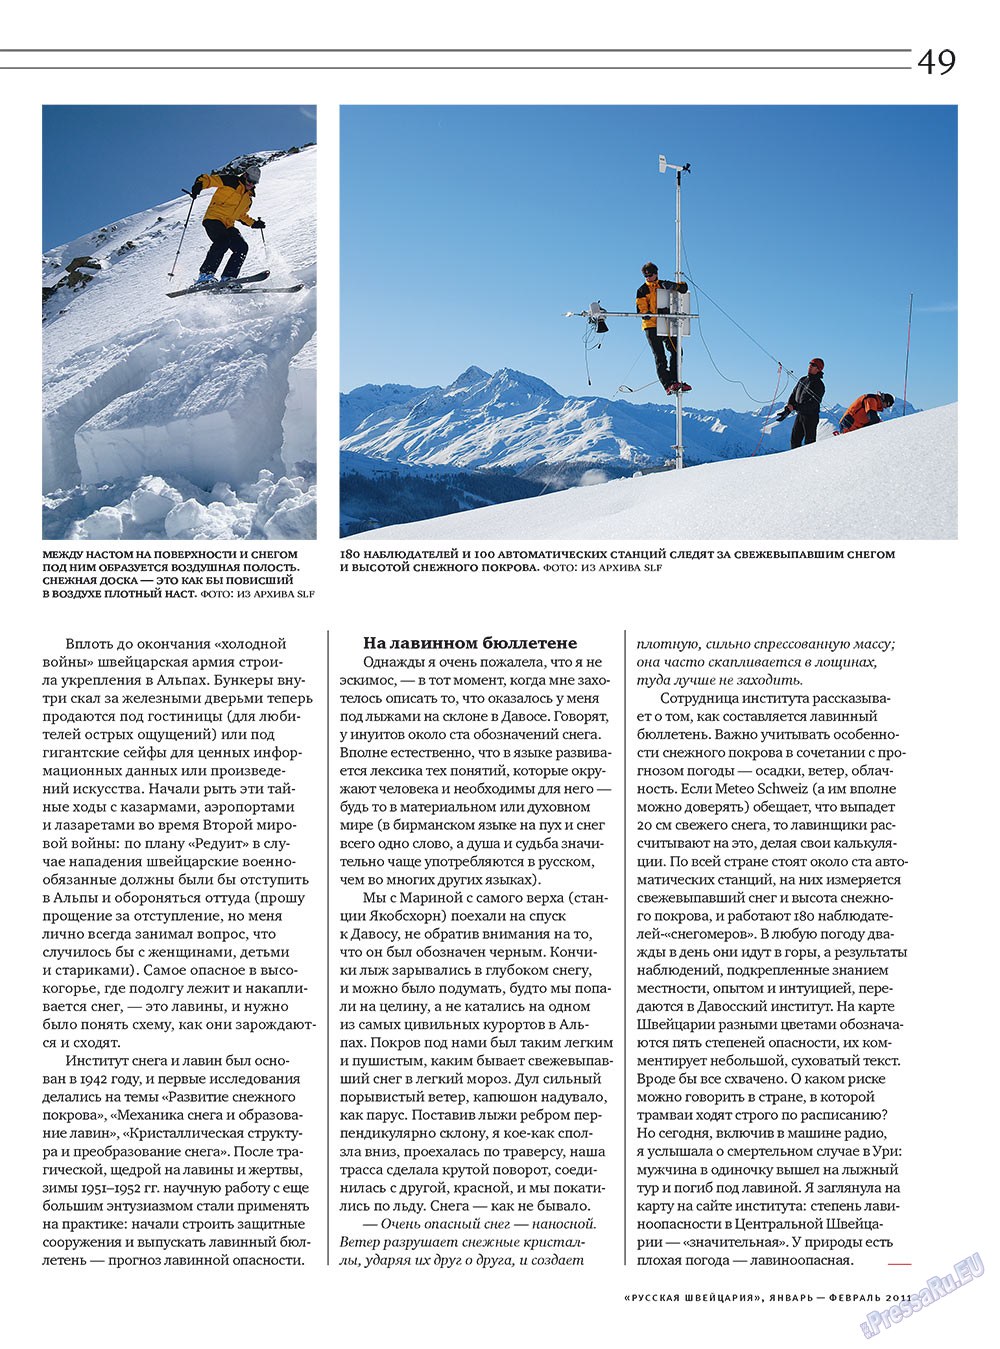 Русская Швейцария, журнал. 2011 №1 стр.49